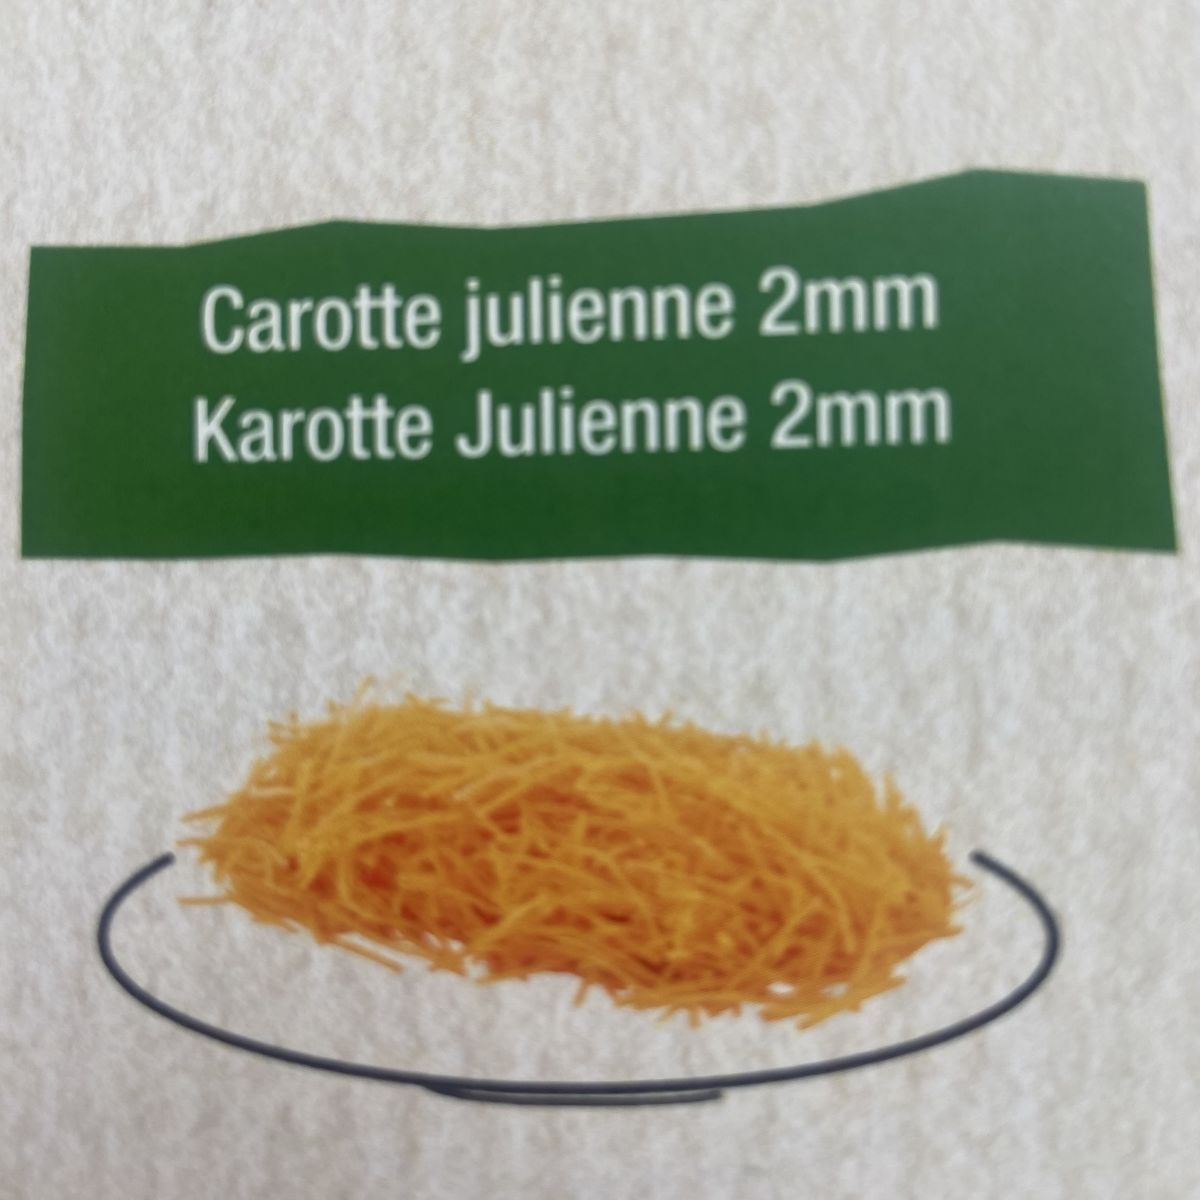 Carotte Julienne 2mm 500g